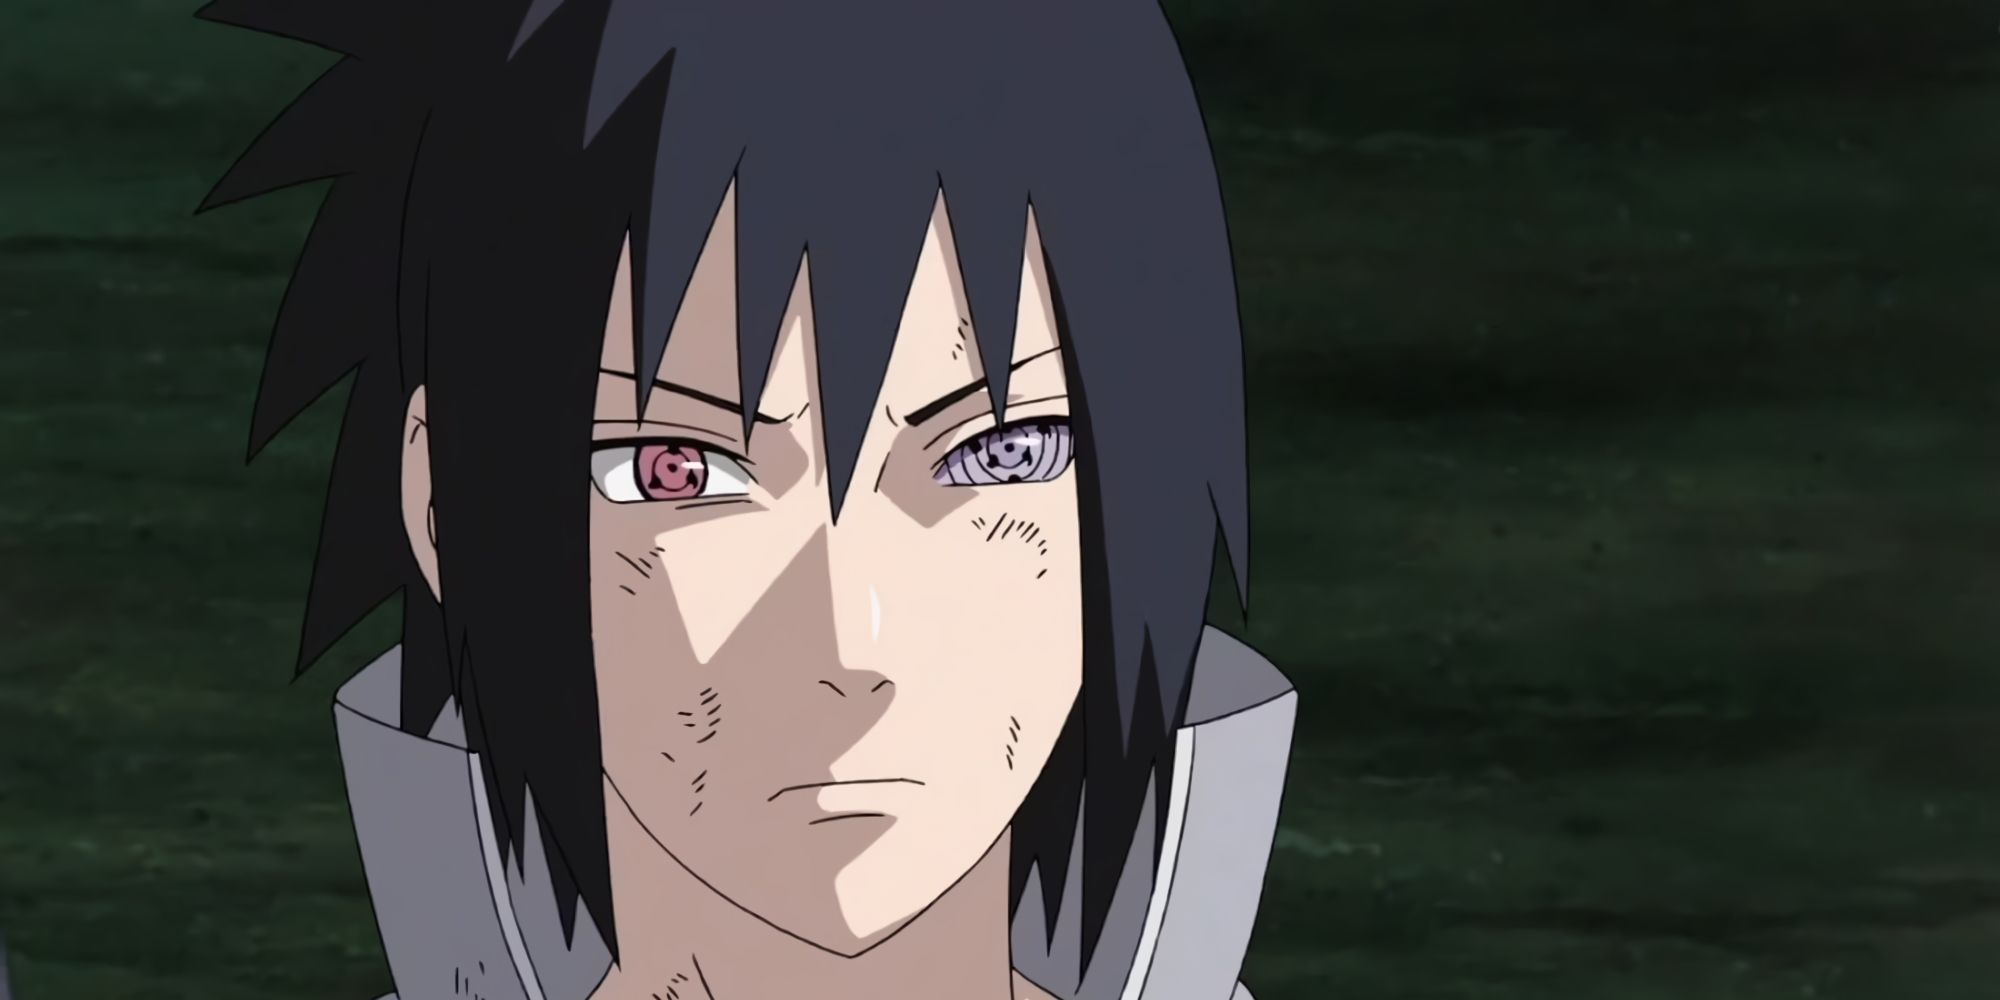 Sasuke From Naruto With His Sharingan And Rinnegan